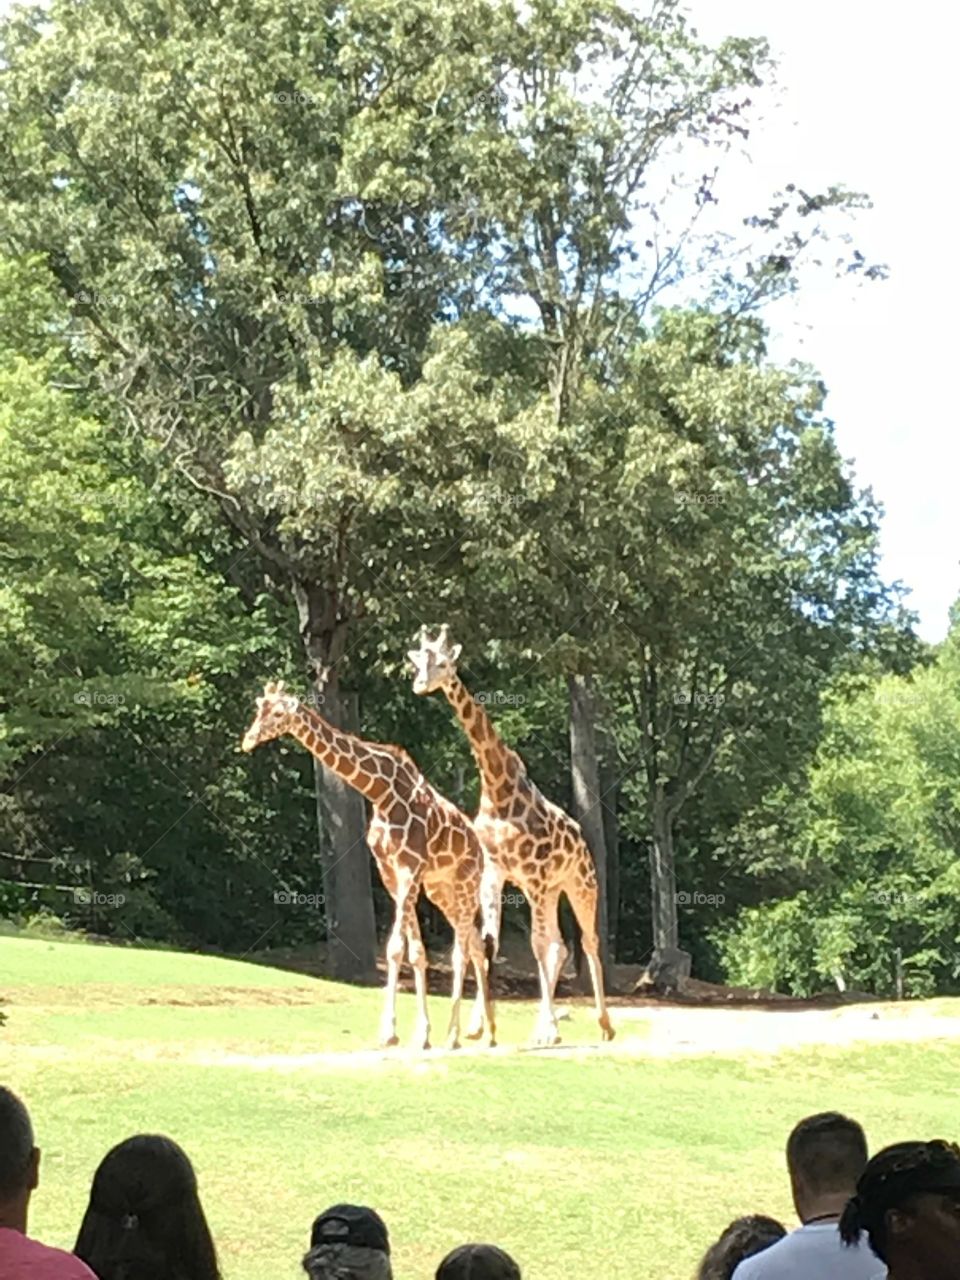 Giraffe at NC Zoo